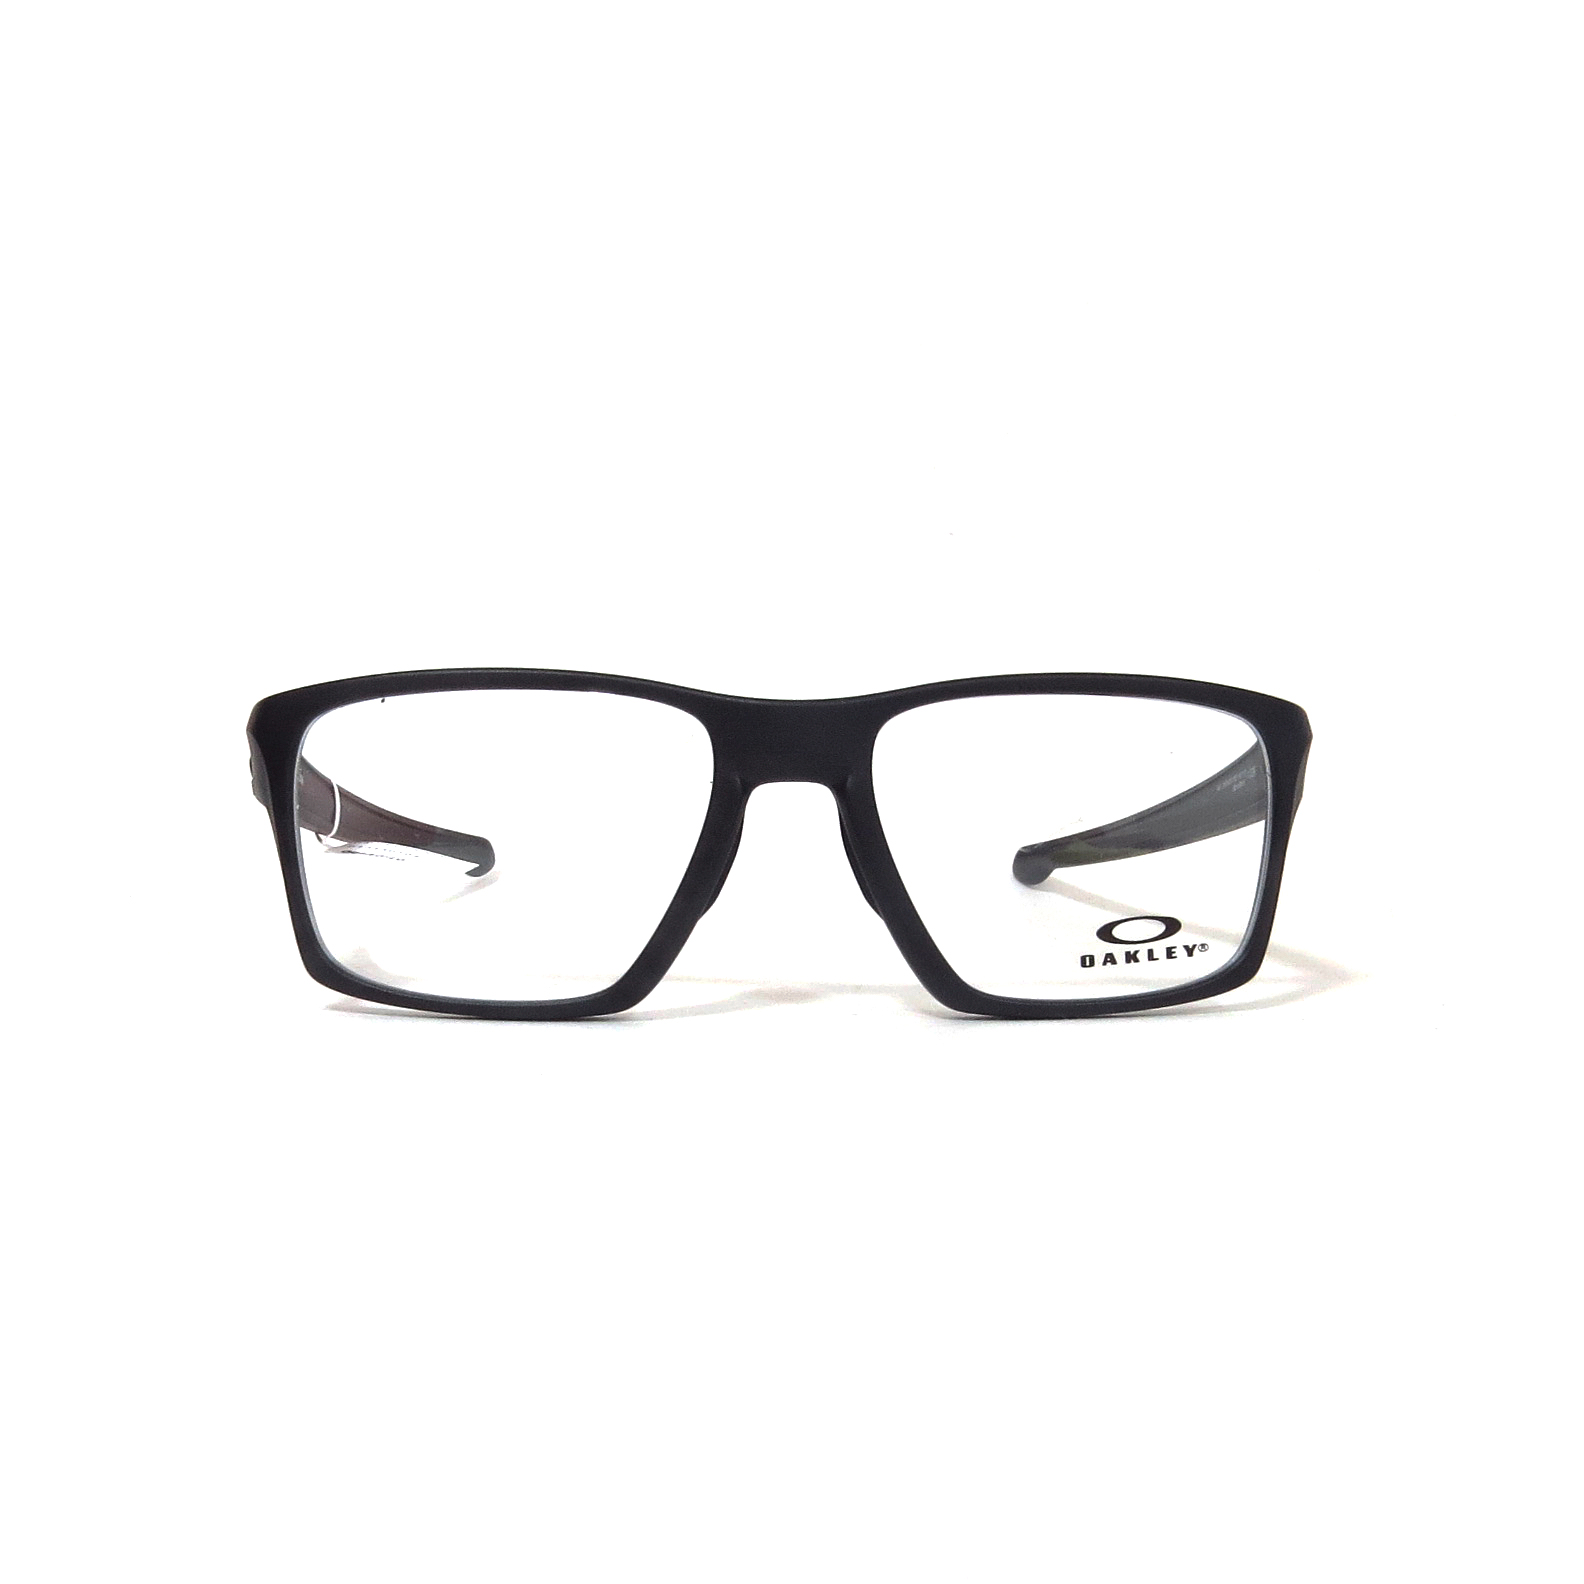 gas influenza pasta Óptica las gafas | OAKLEY - 8140 - Óptica las gafas